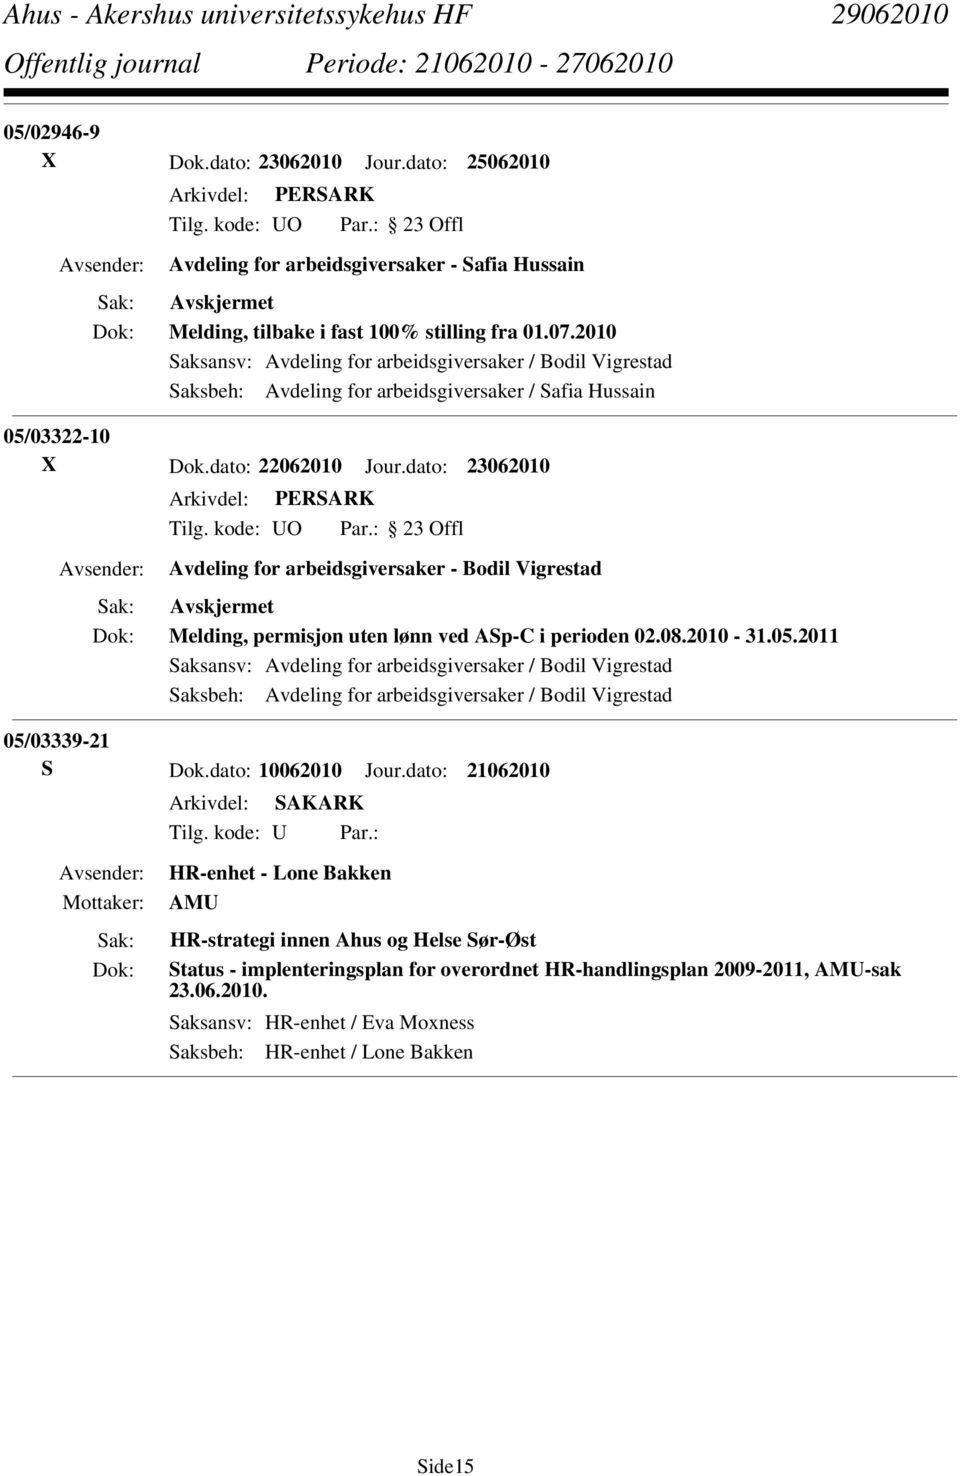 dato: 23062010 Avdeling for arbeidsgiversaker - Bodil Vigrestad Melding, permisjon uten lønn ved ASp-C i perioden 02.08.2010-31.05.